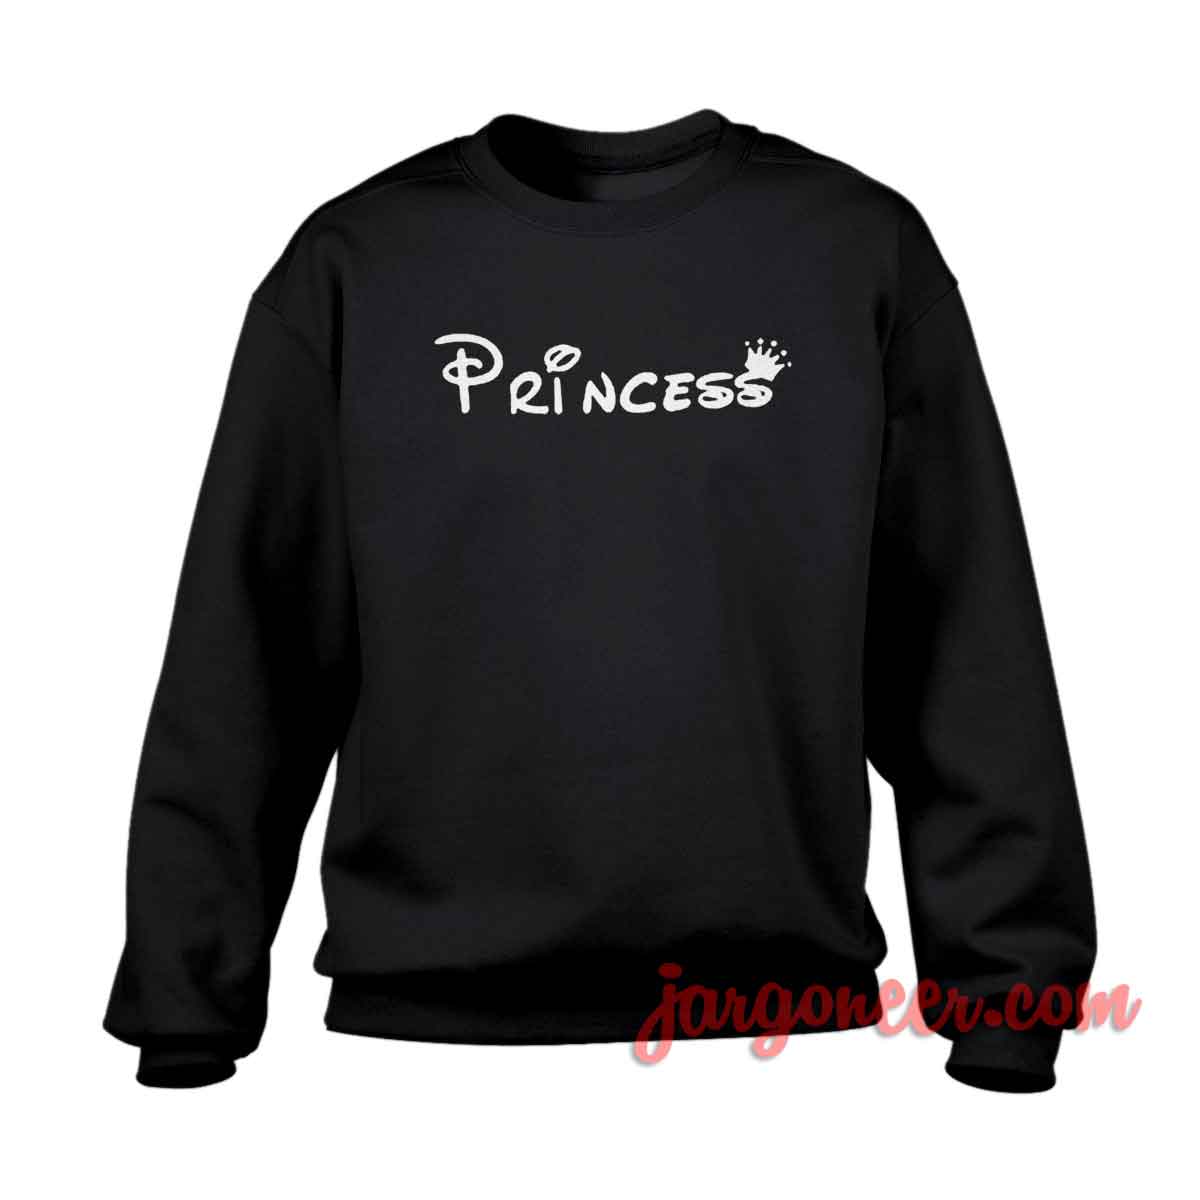 Princess Disney 1 - Shop Unique Graphic Cool Shirt Designs